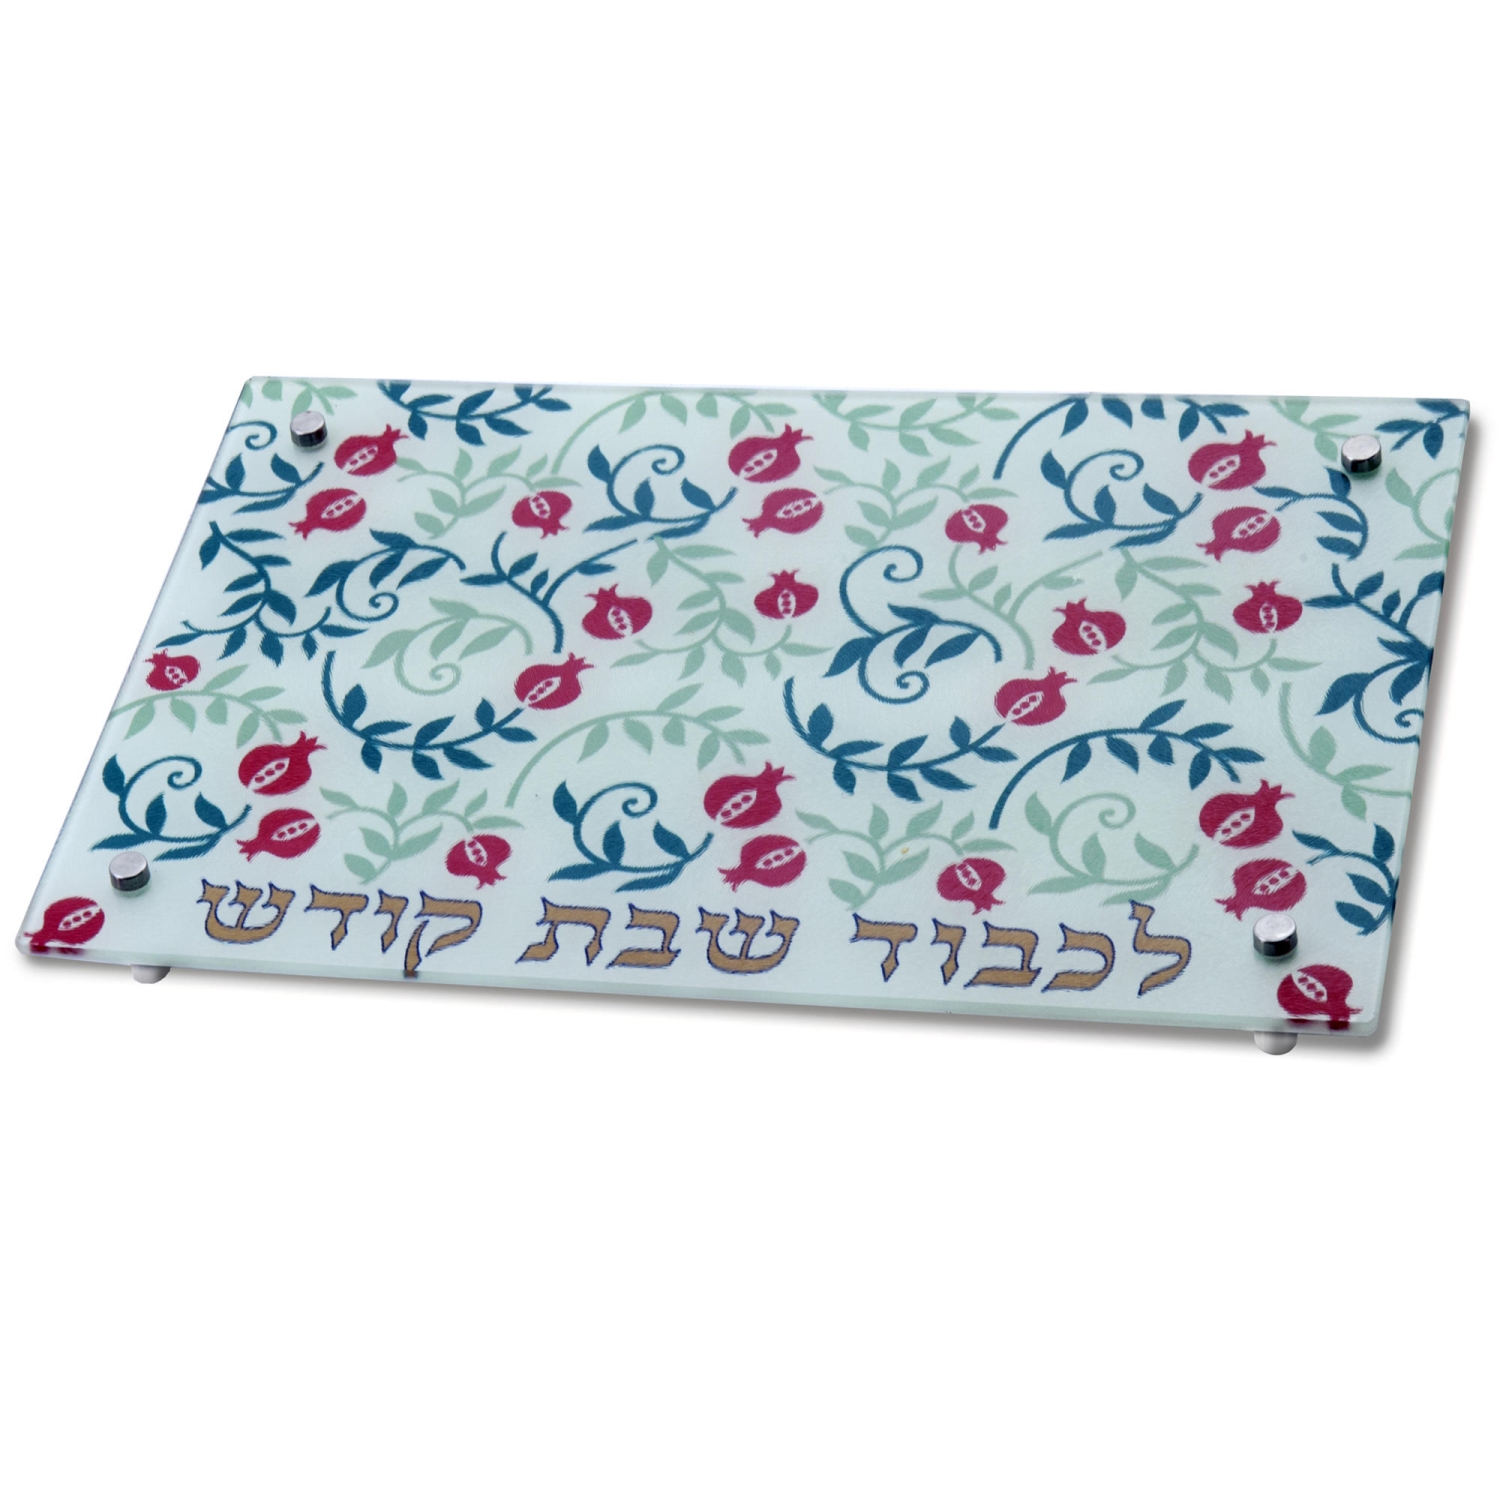 Dorit Judaica Tempered Glass Challah Board - Small Pomegranate Design - 1